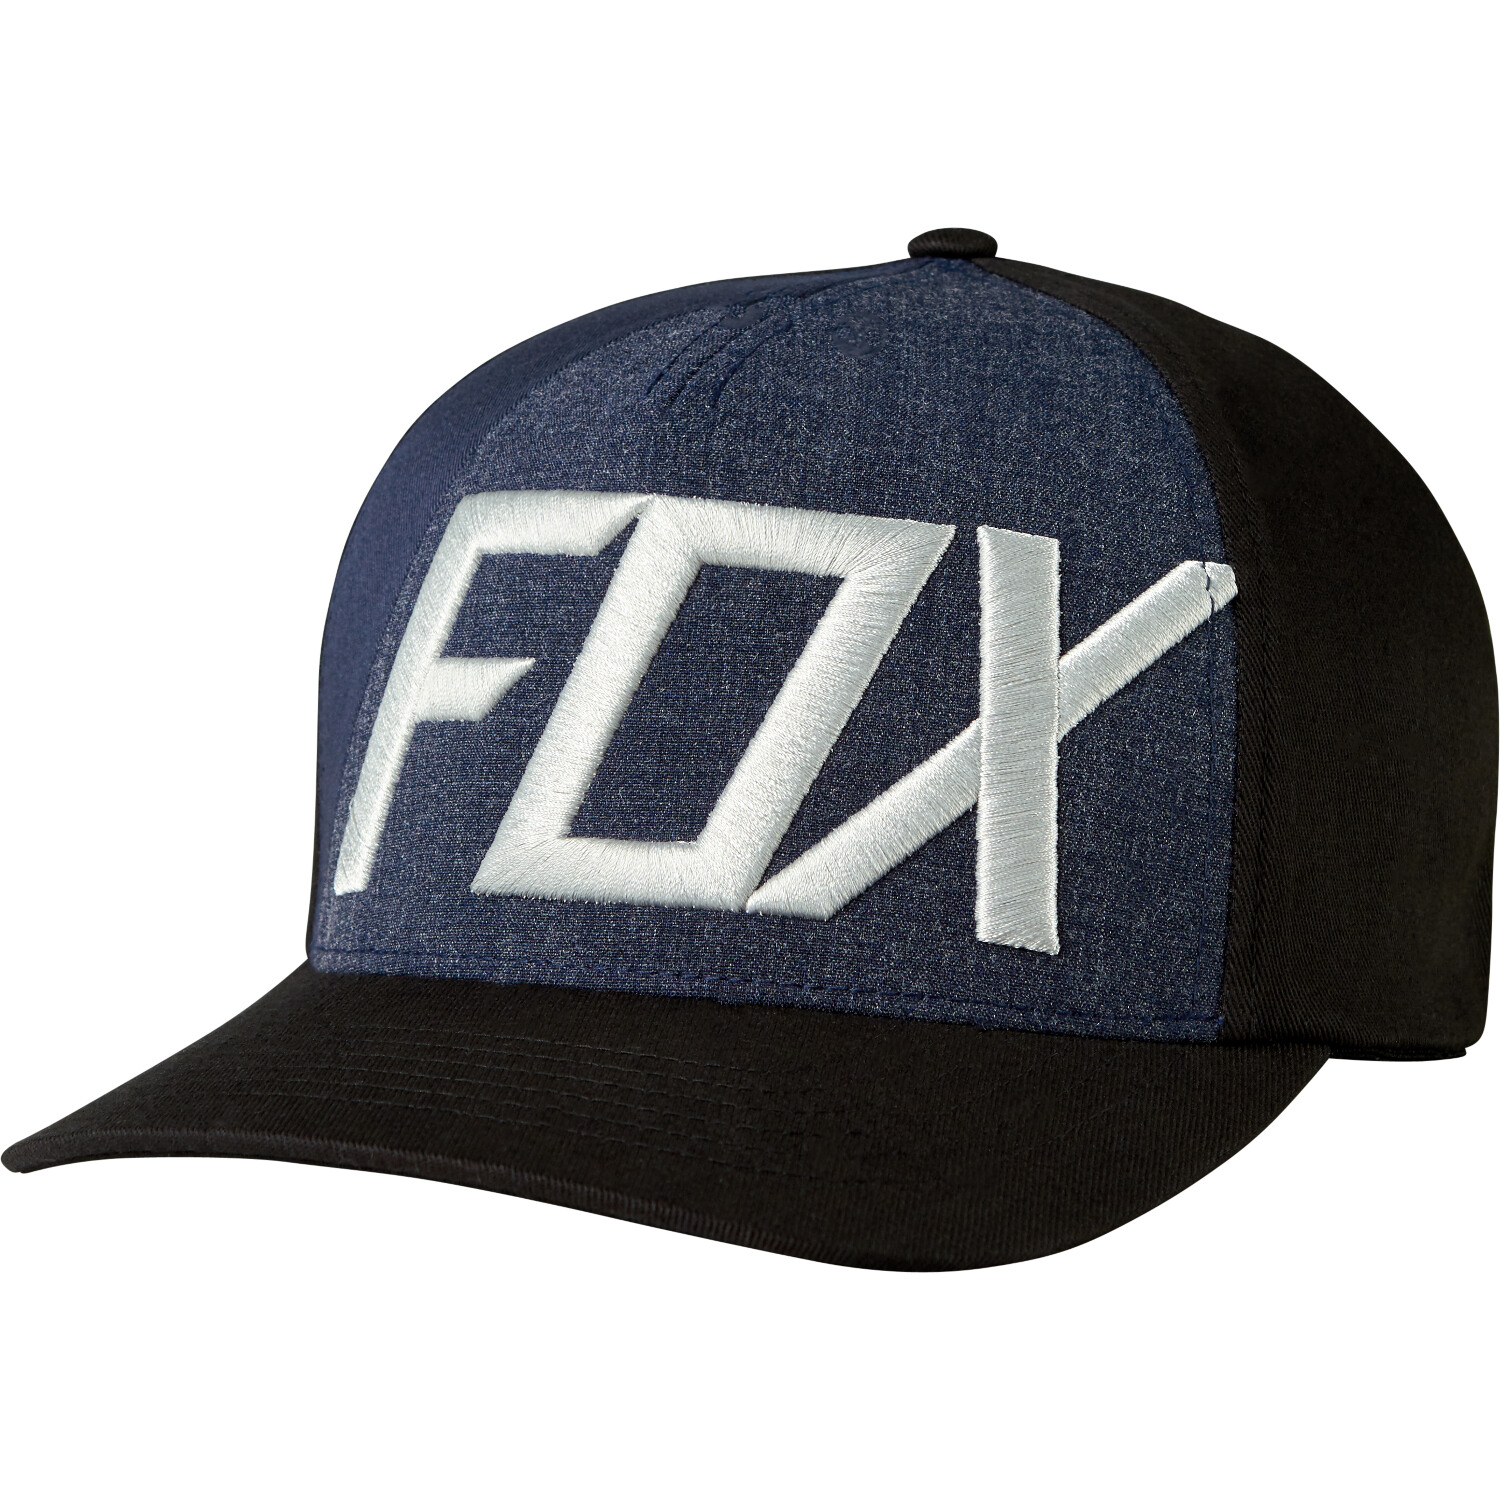 Fox Flexfit Cap Blocked Out Black